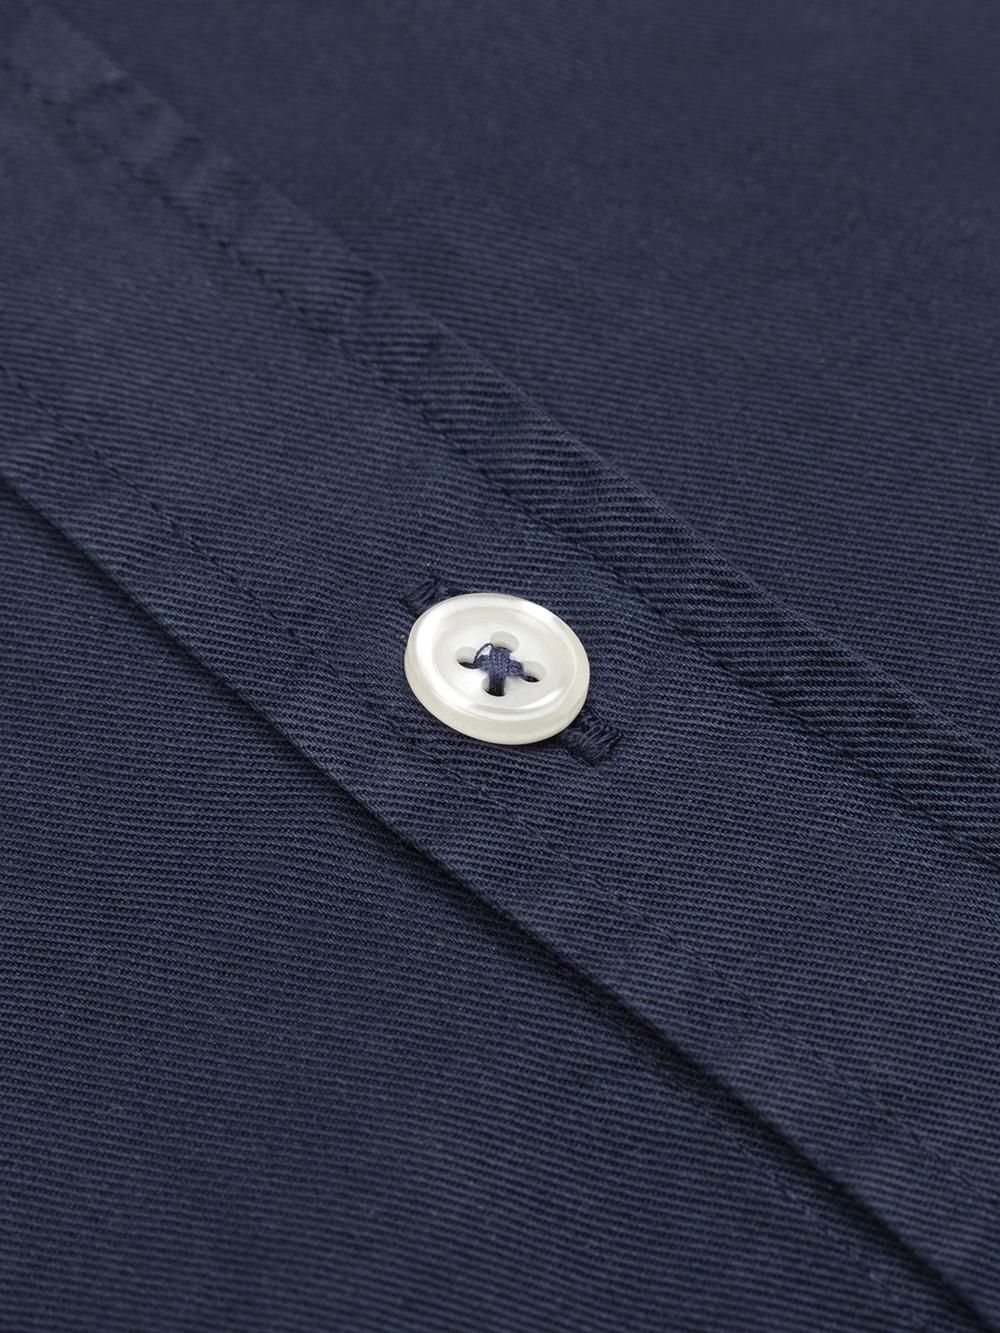 Camisa Scali en gabardina azul marino - Edición limitada